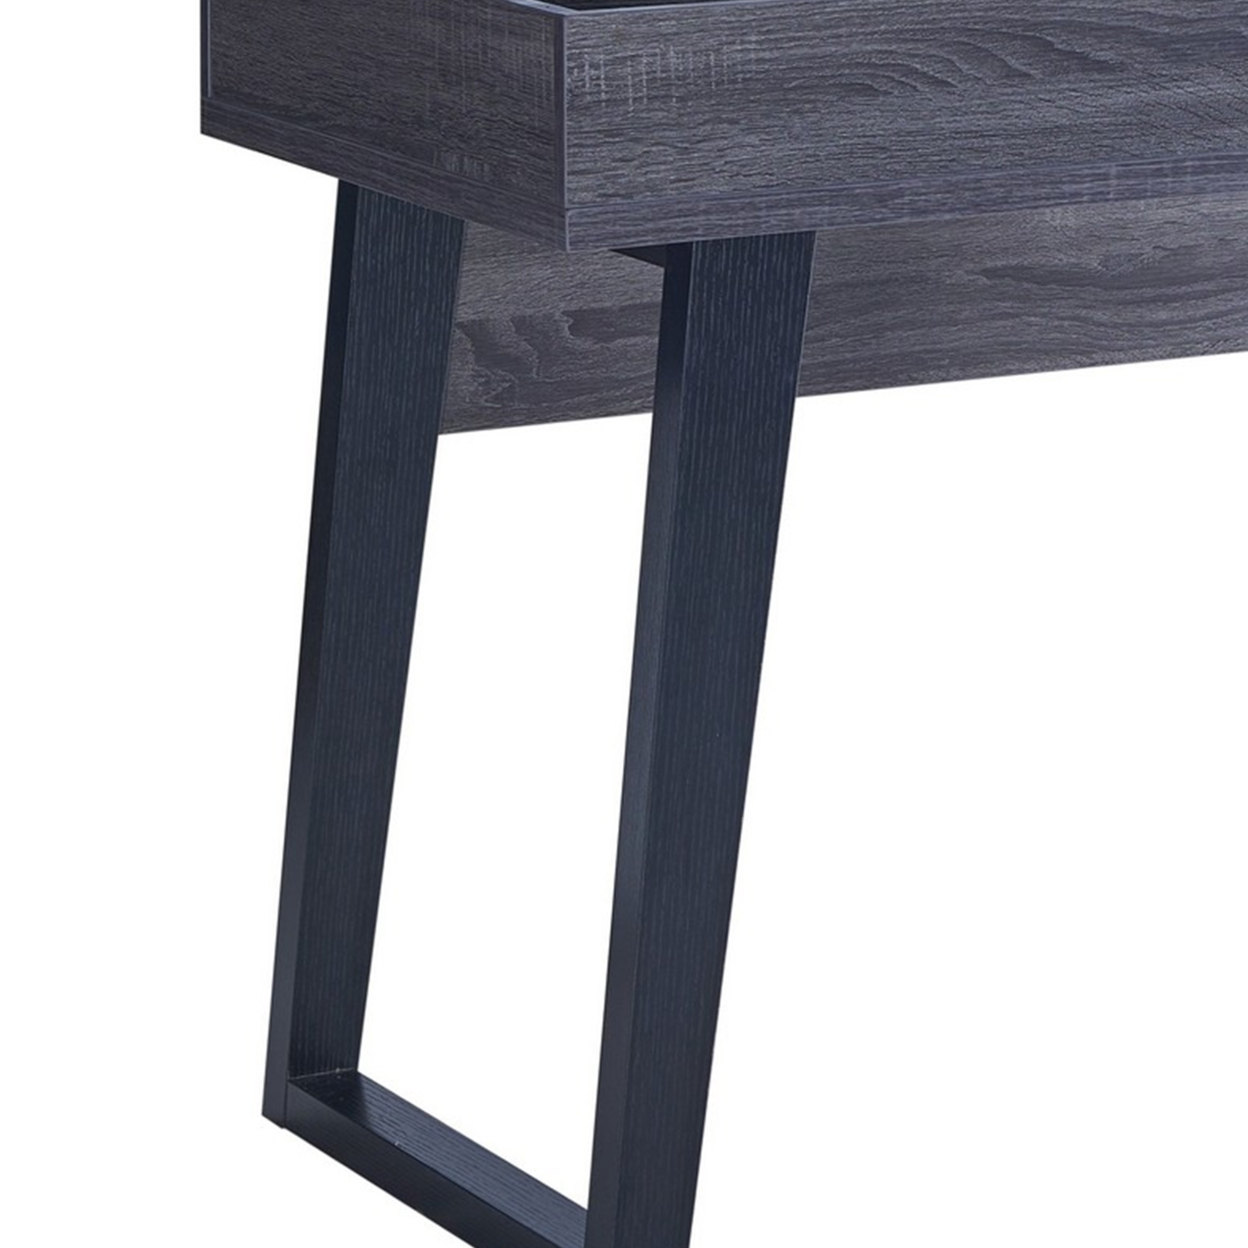 Wooden Desk With 1 Open Bottom Shelf And Sliding Panel, Gray- Saltoro Sherpi